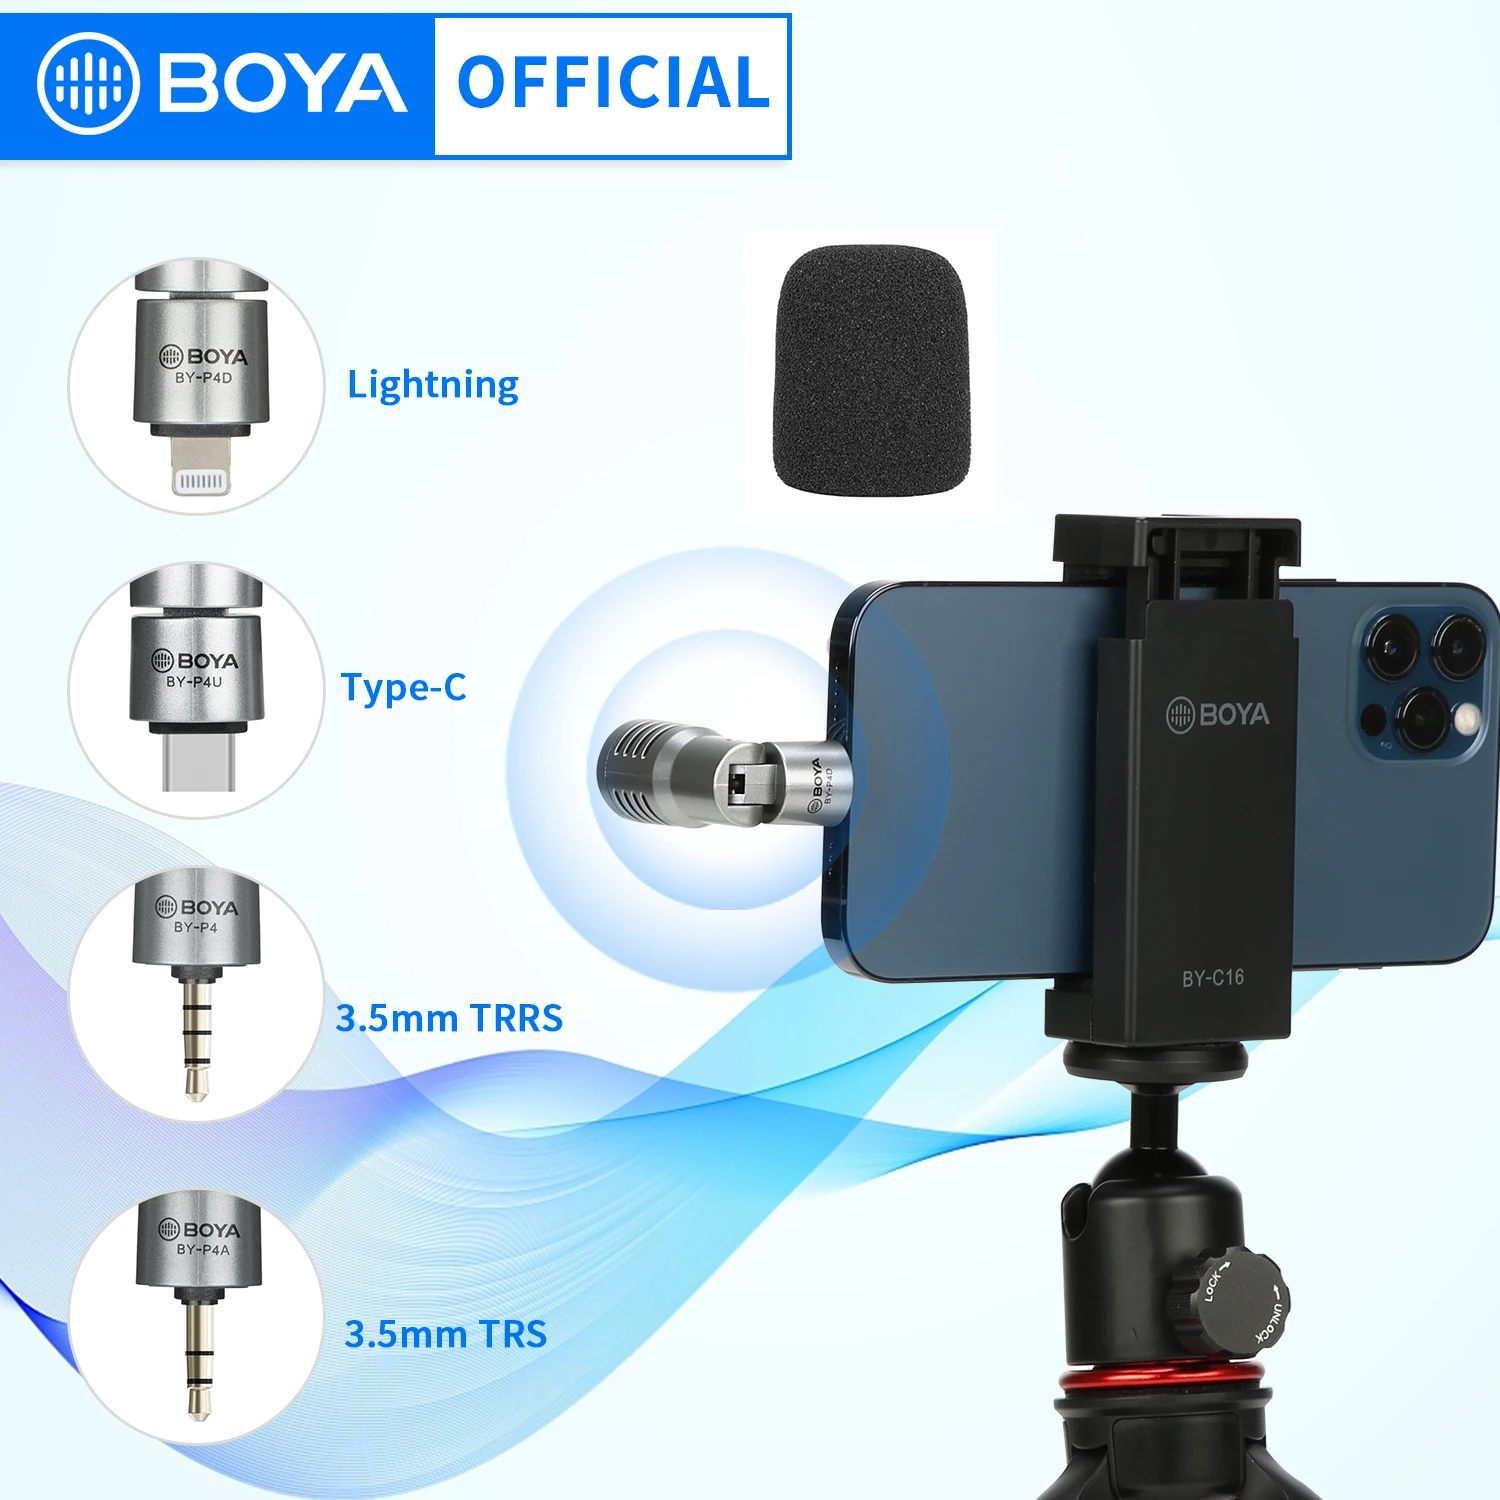 Фото Всенаправленный конденсаторный мини-микрофон BOYA BY-P4 для смартфонов | Электроника